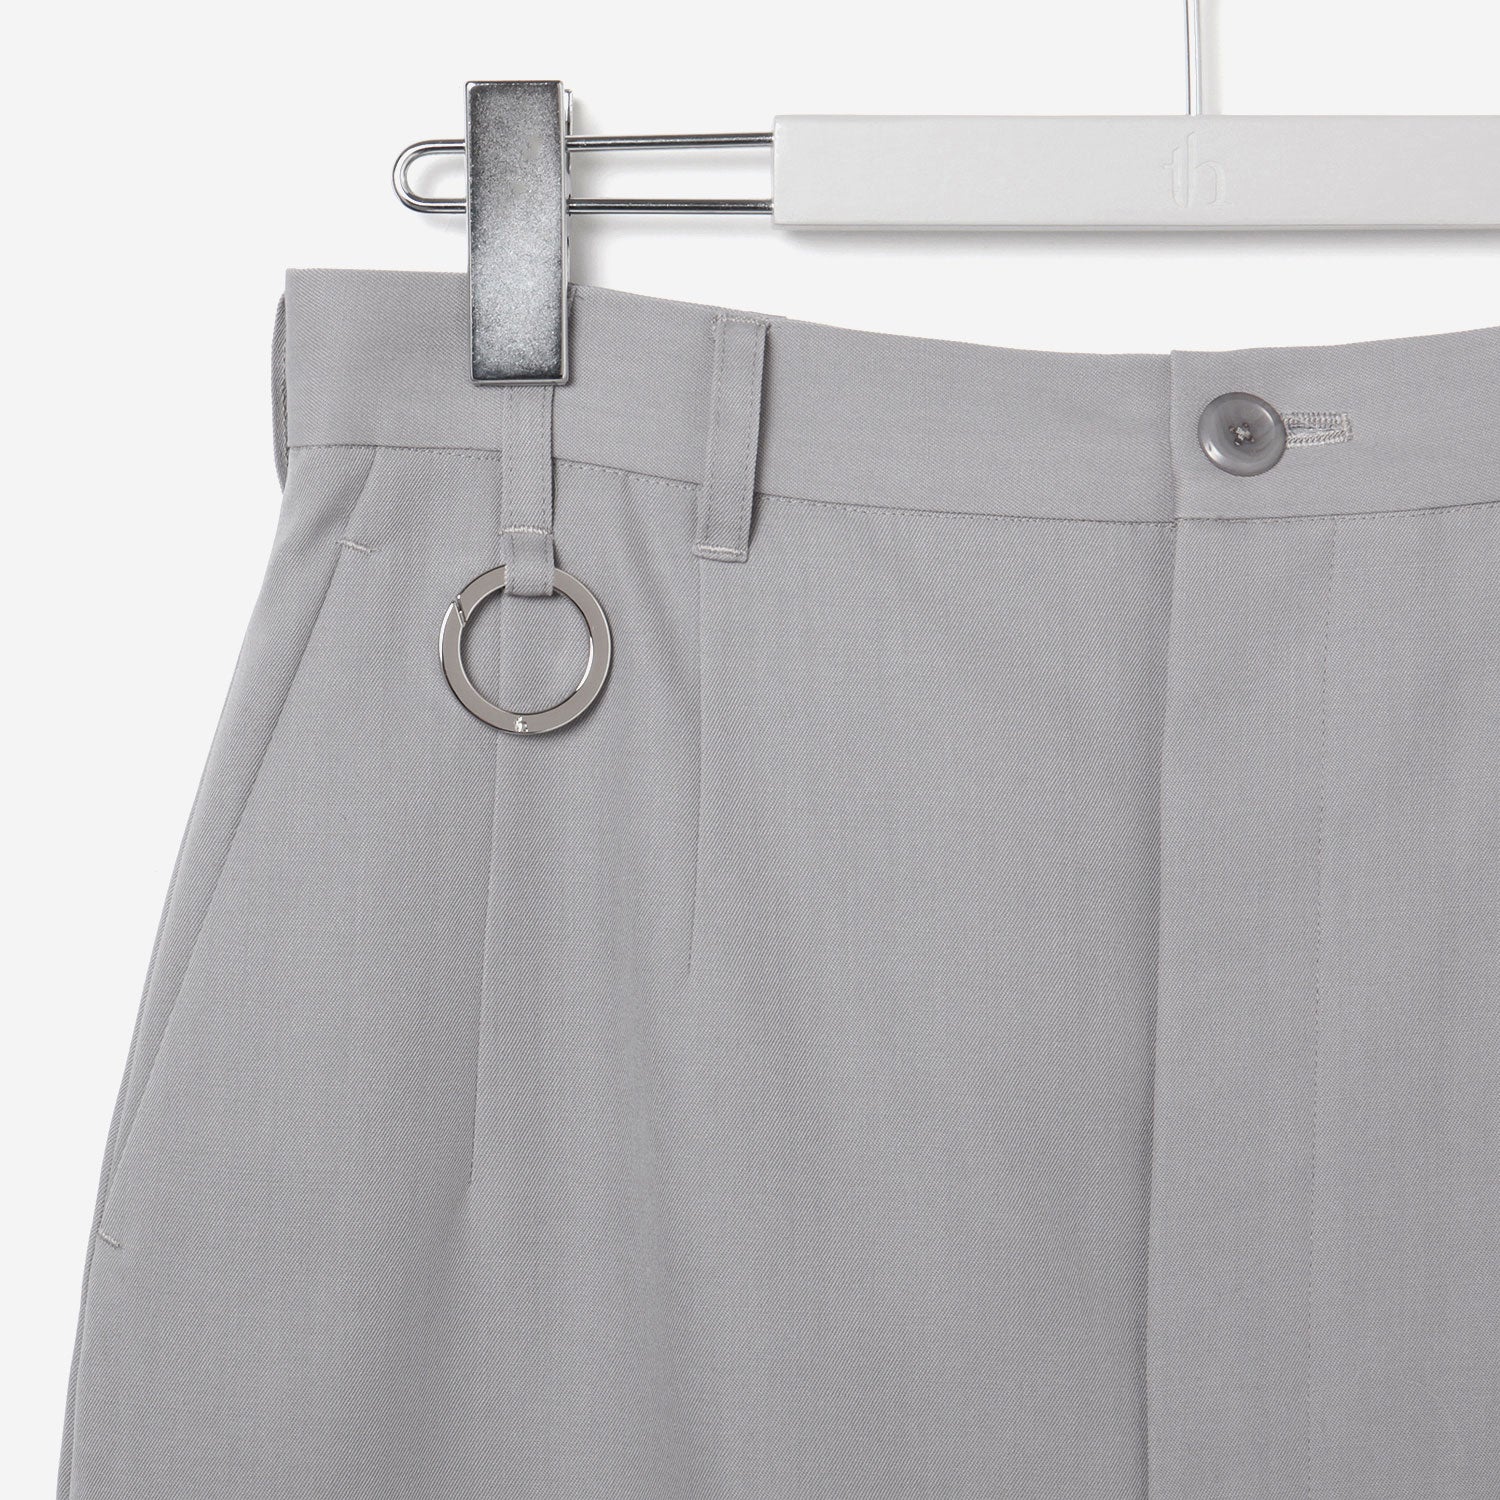 Long Open Skirt / gray